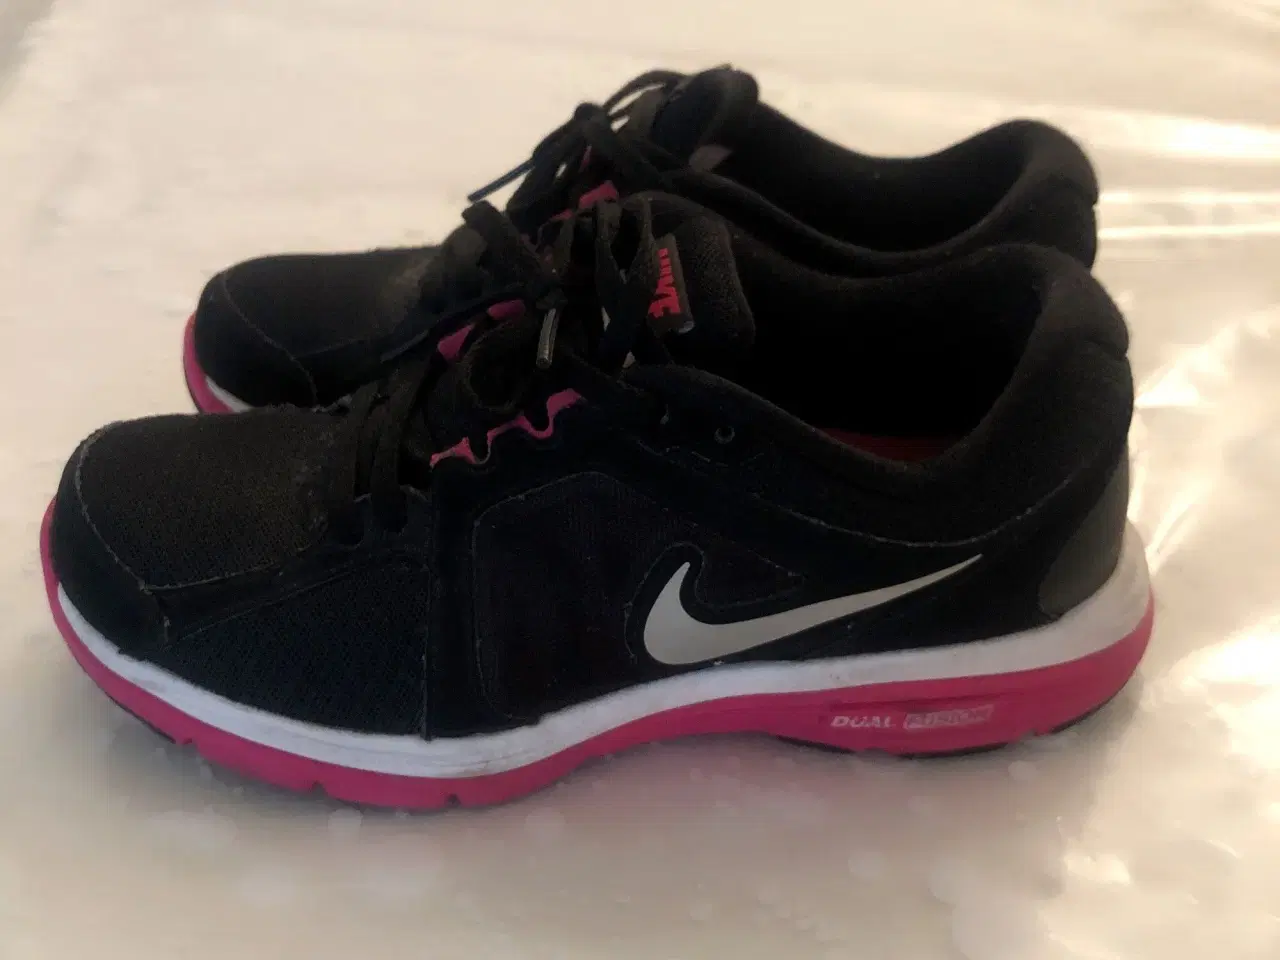 Billede 1 - Nike sneakers str 36,5. Sorte med pink og hvidt